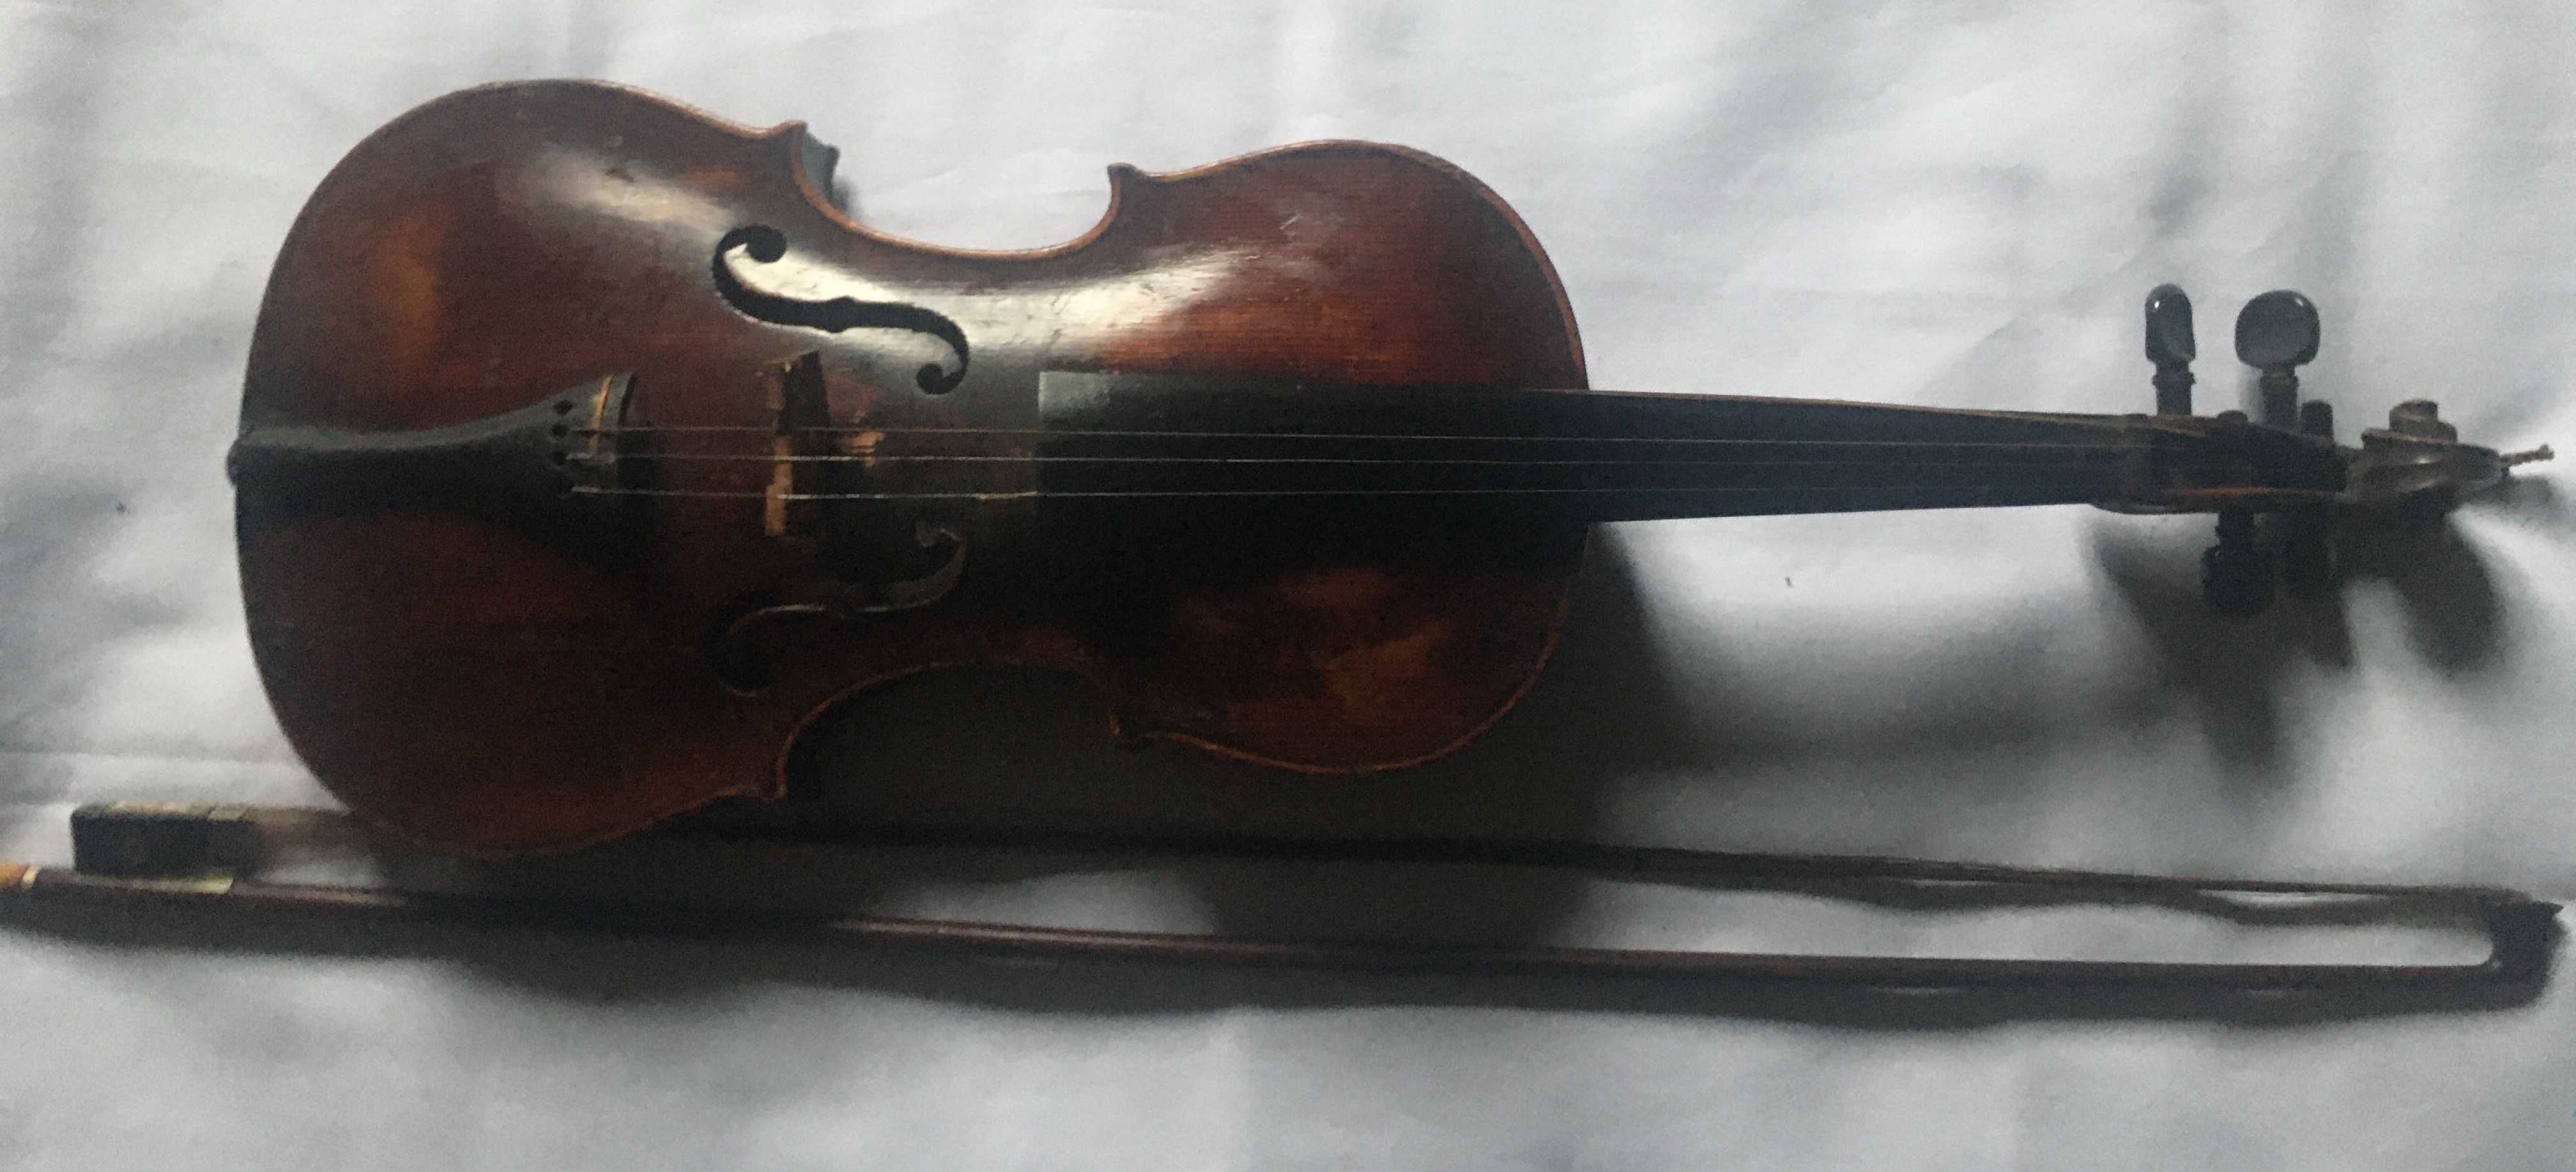 Антиквариат. Старая скрипка  в стиле барокко, вместе со смычком.Чехия.